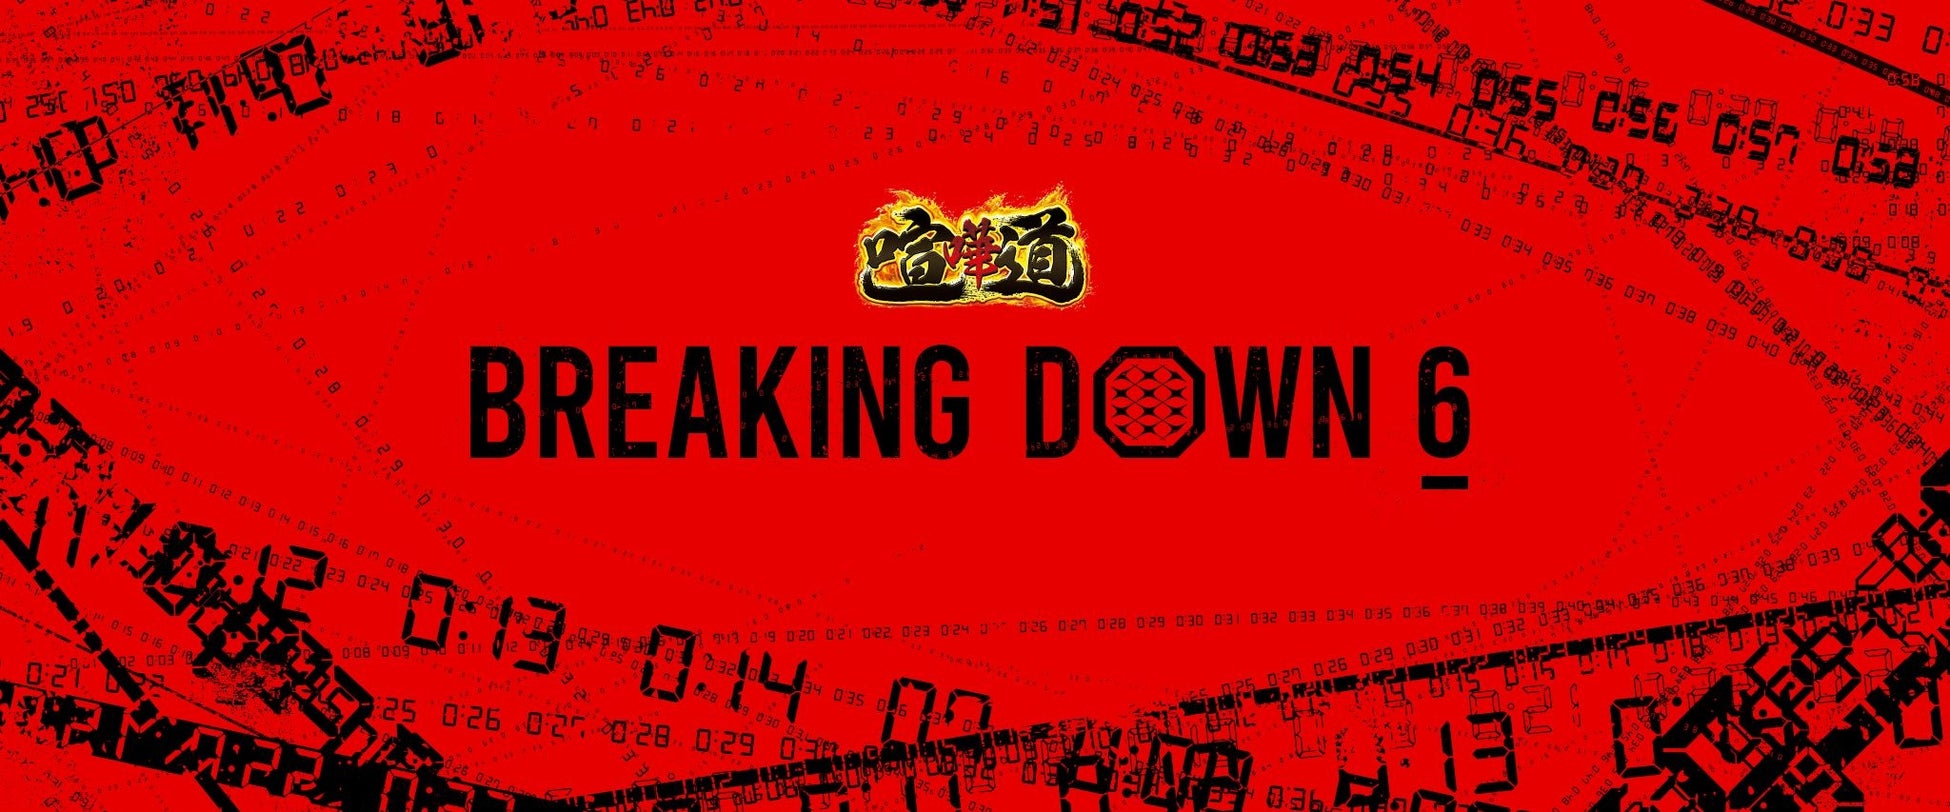 過去最速で1000万動画再生を達成、最高の盛り上がりを見せる　　　　　　　　　　　　　　　　喧嘩道 presents BreakingDown6のゴールドスポンサーに、2大会連続で鬼丸ホームが就任！